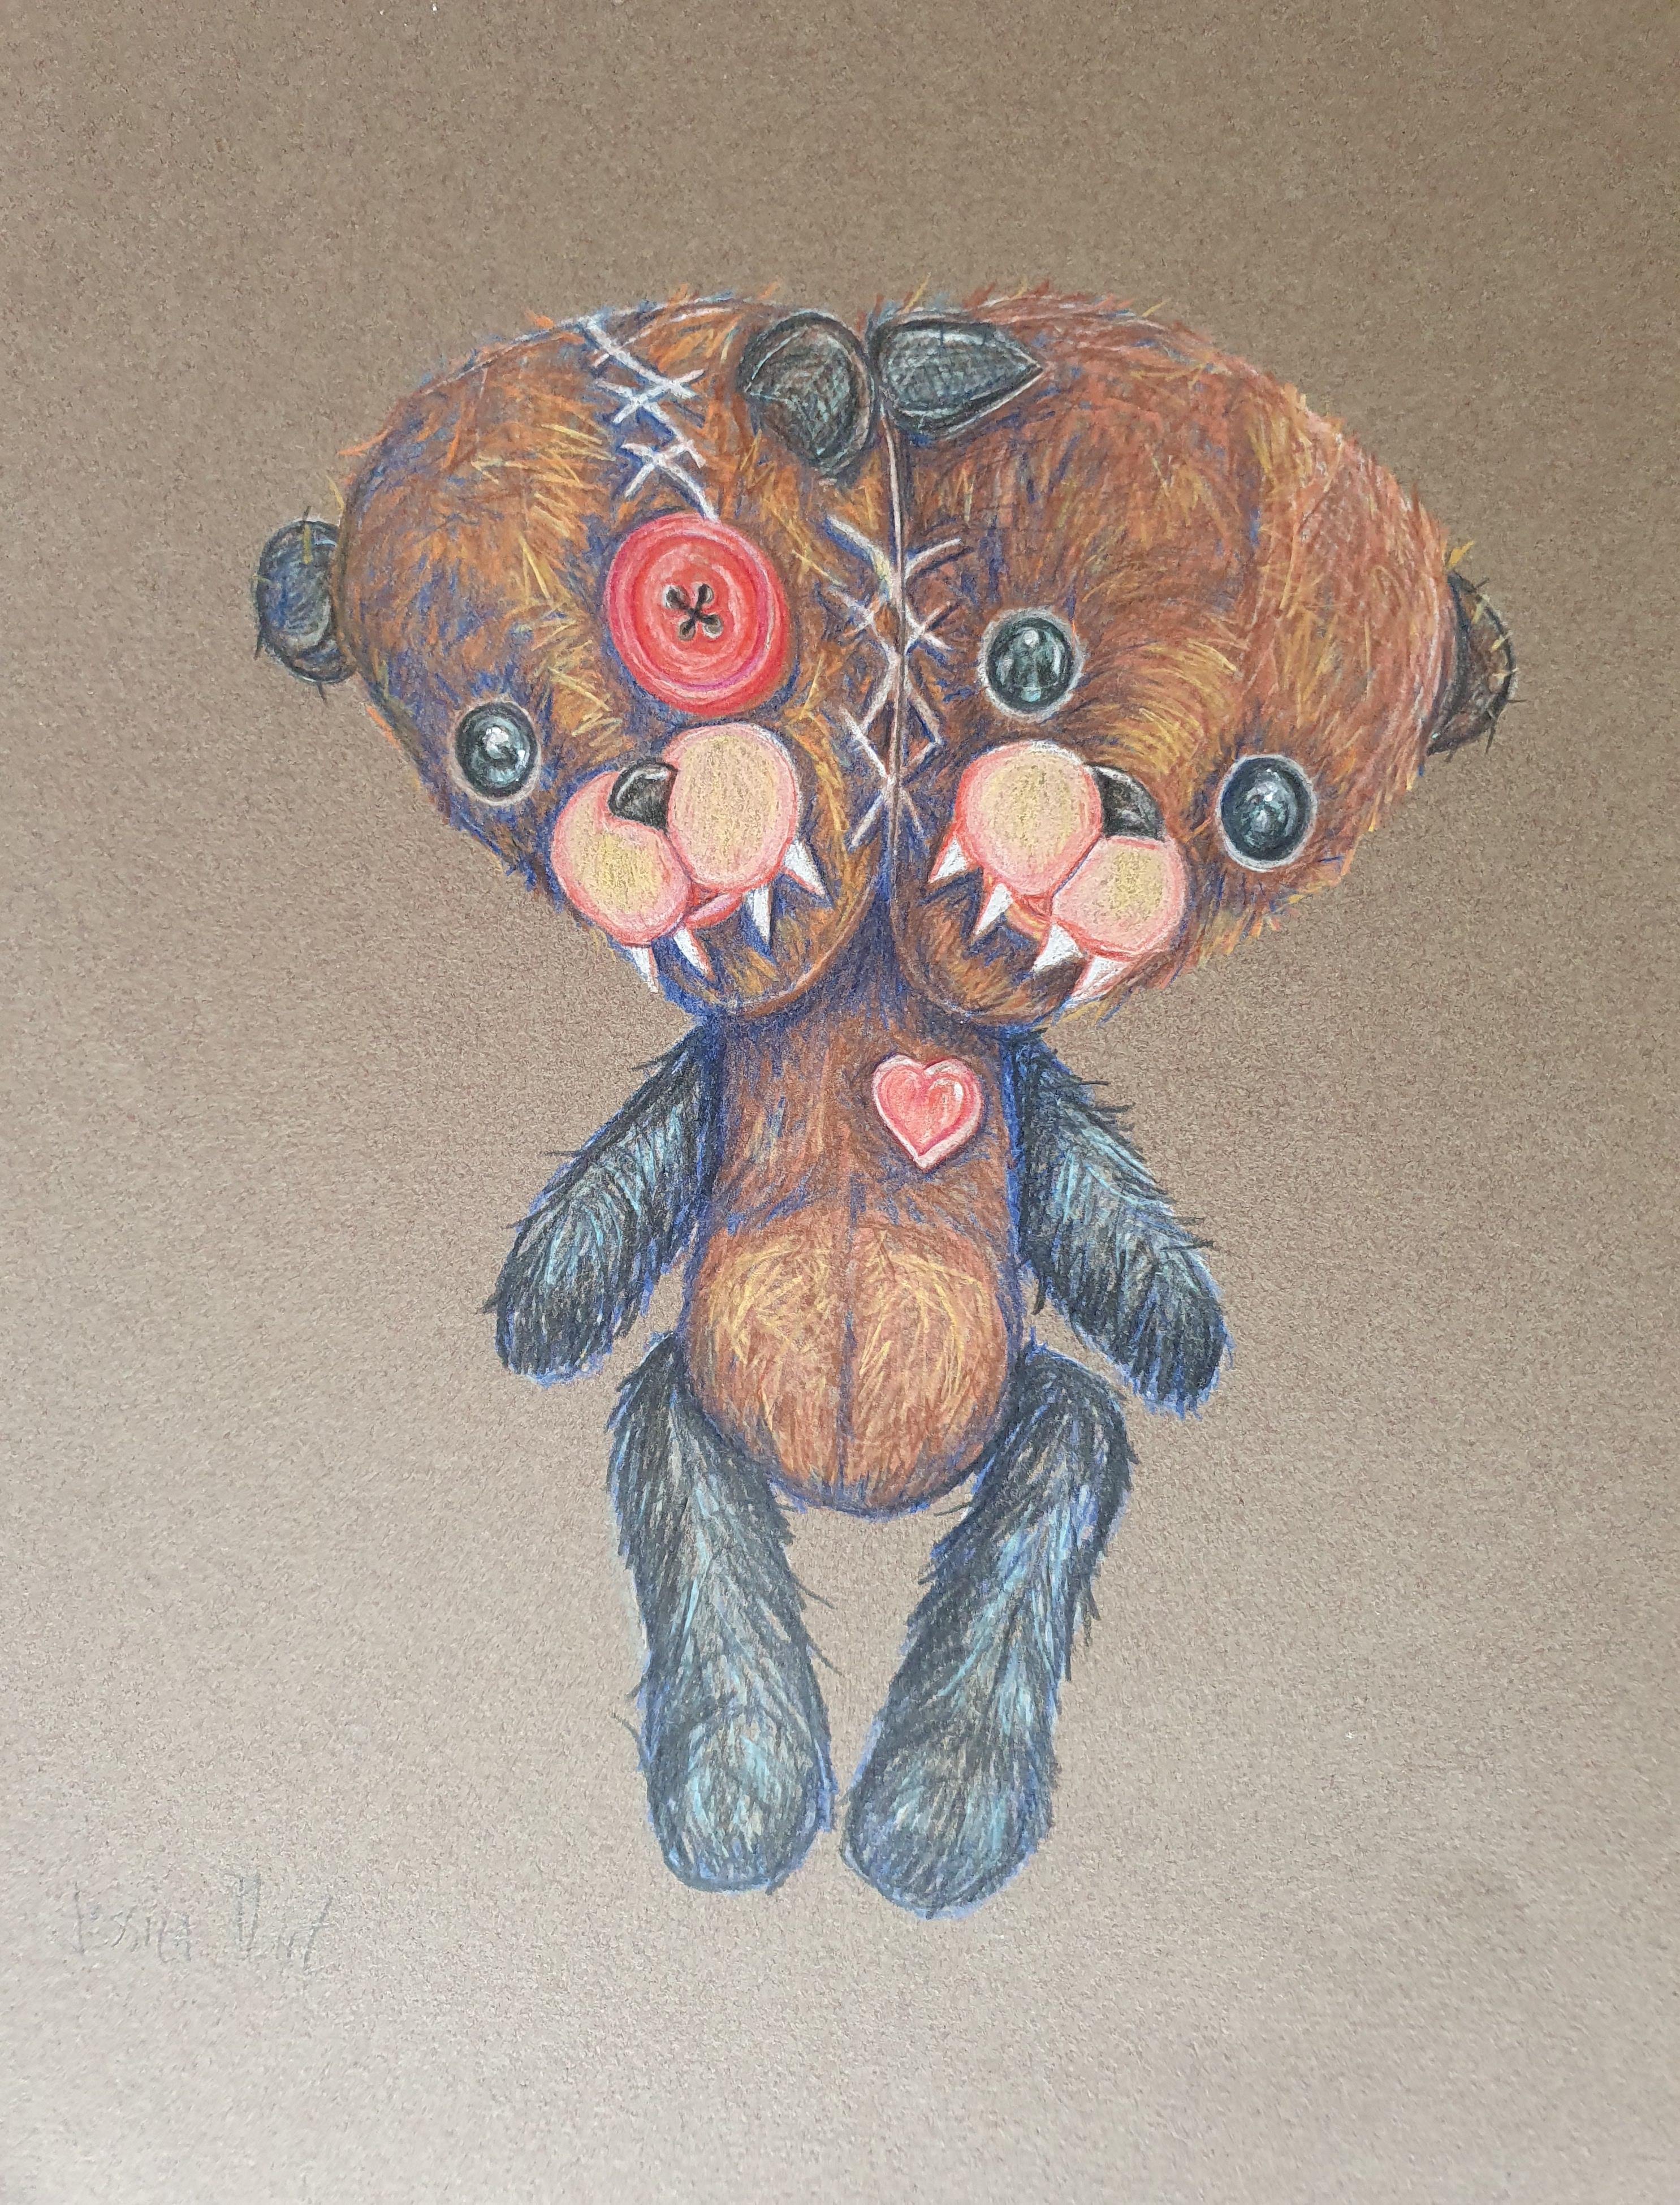 Jessica Pliez Figurative Painting - Tiny cuty sweaty Teddy Bear - 2020